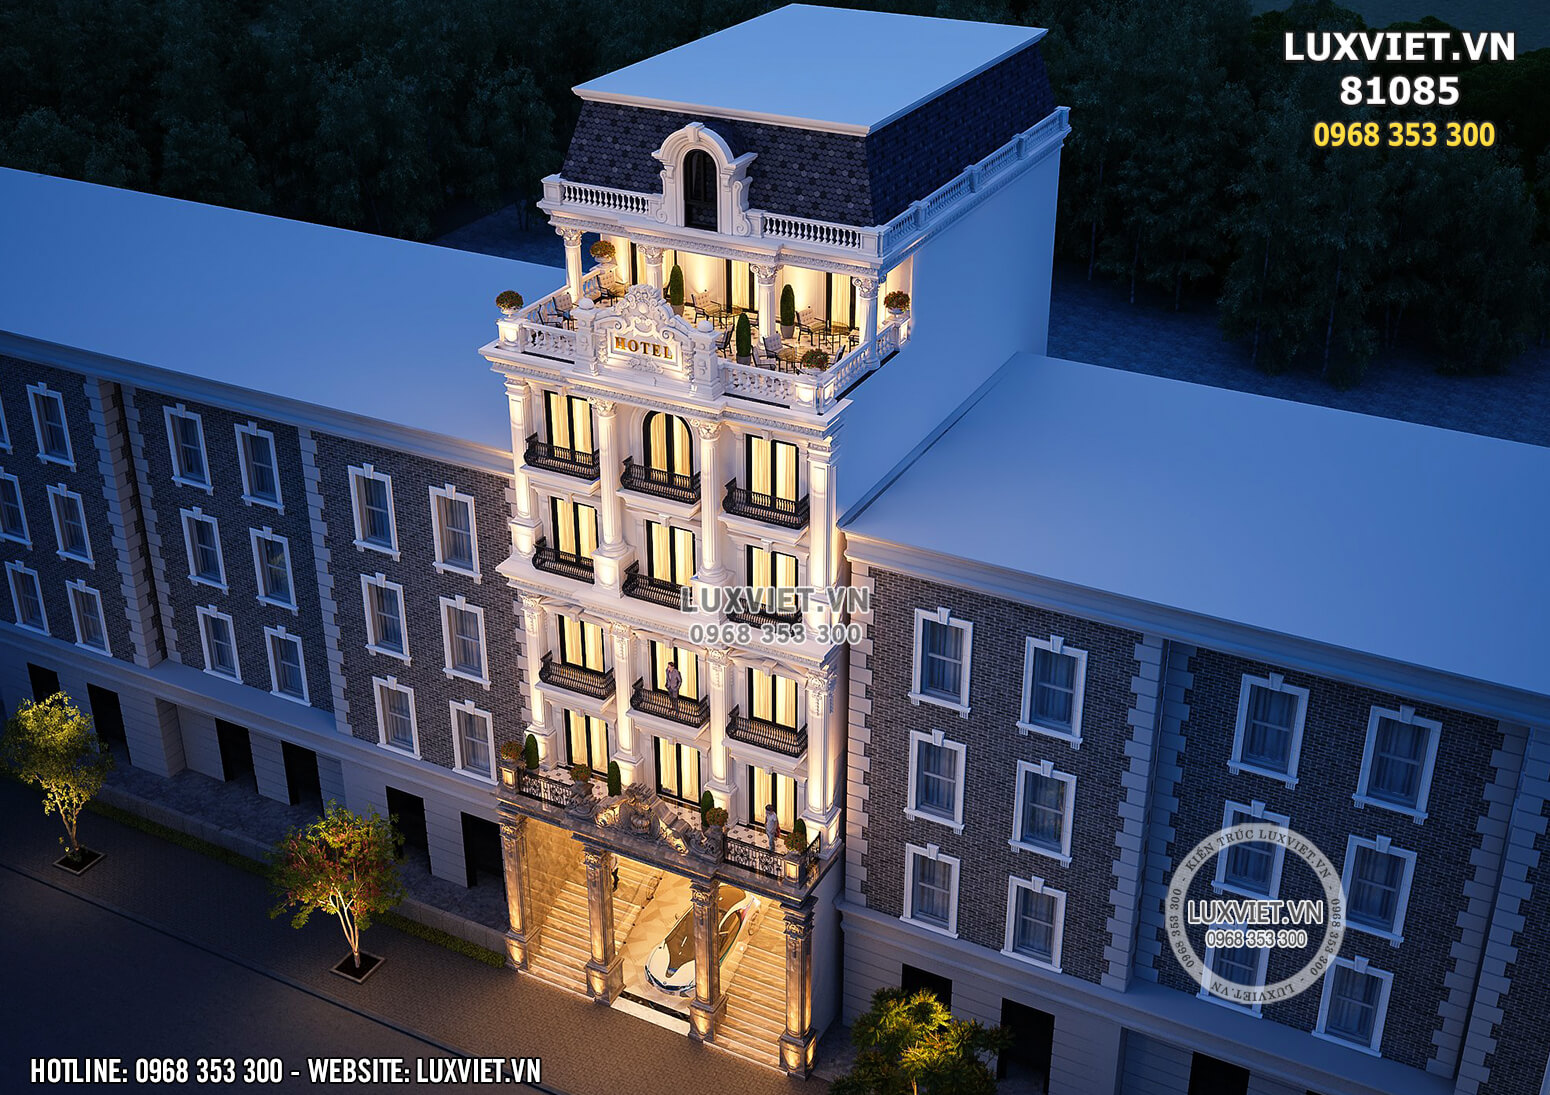 Mẫu thiết kế phối cảnh khách sạn tân cổ điển đẹp tại Hà Nội - Luxviet 81085